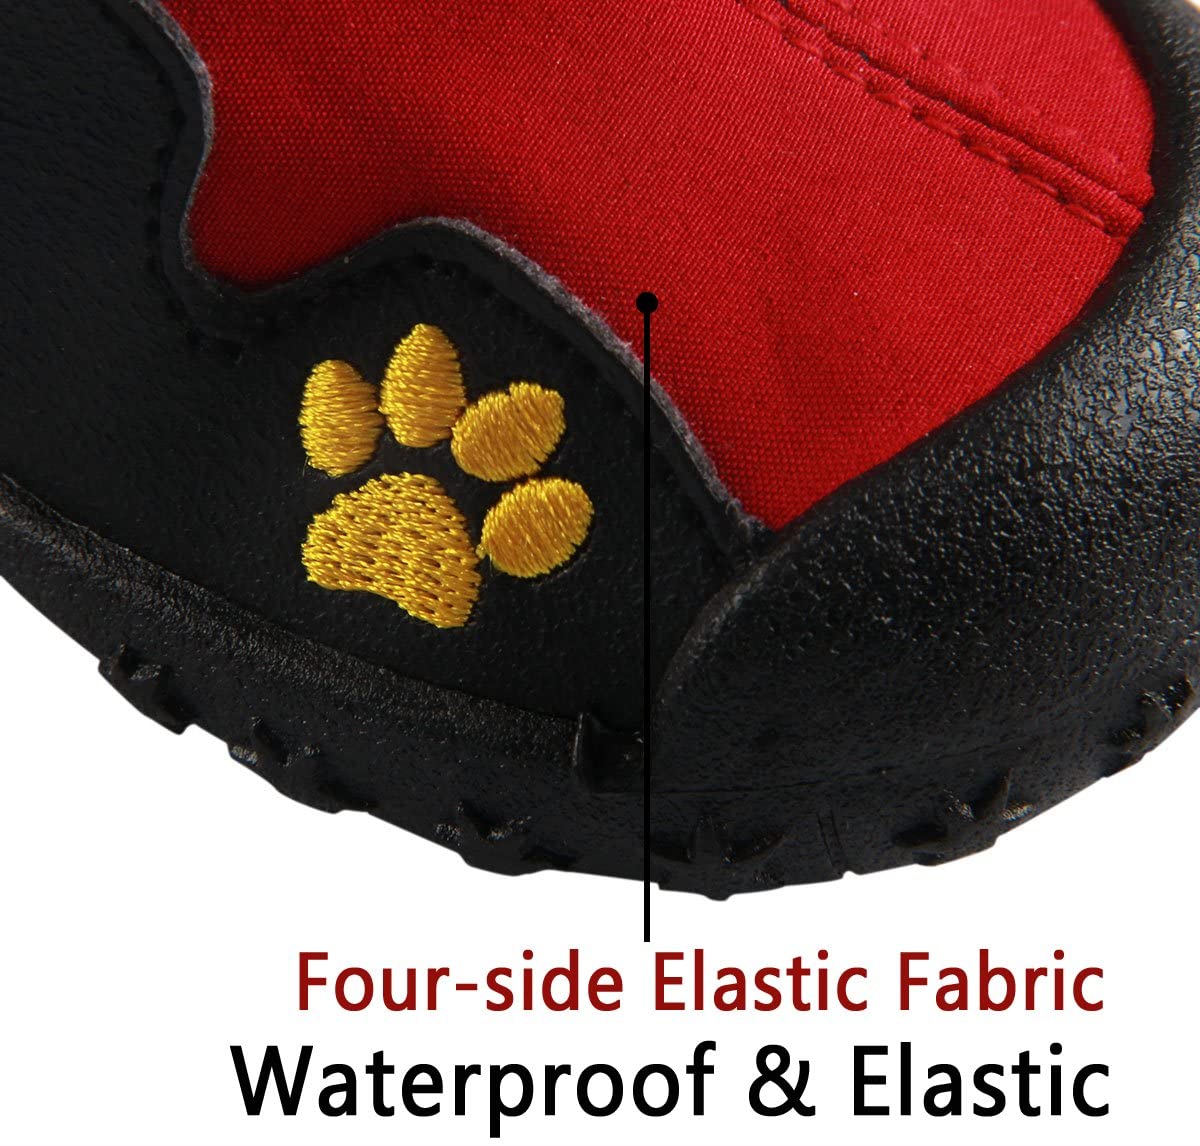  JoyDaog - Botas antideslizantes para perro al aire libre, correas reflectantes resistentes al agua, zapatos para perros grandes 